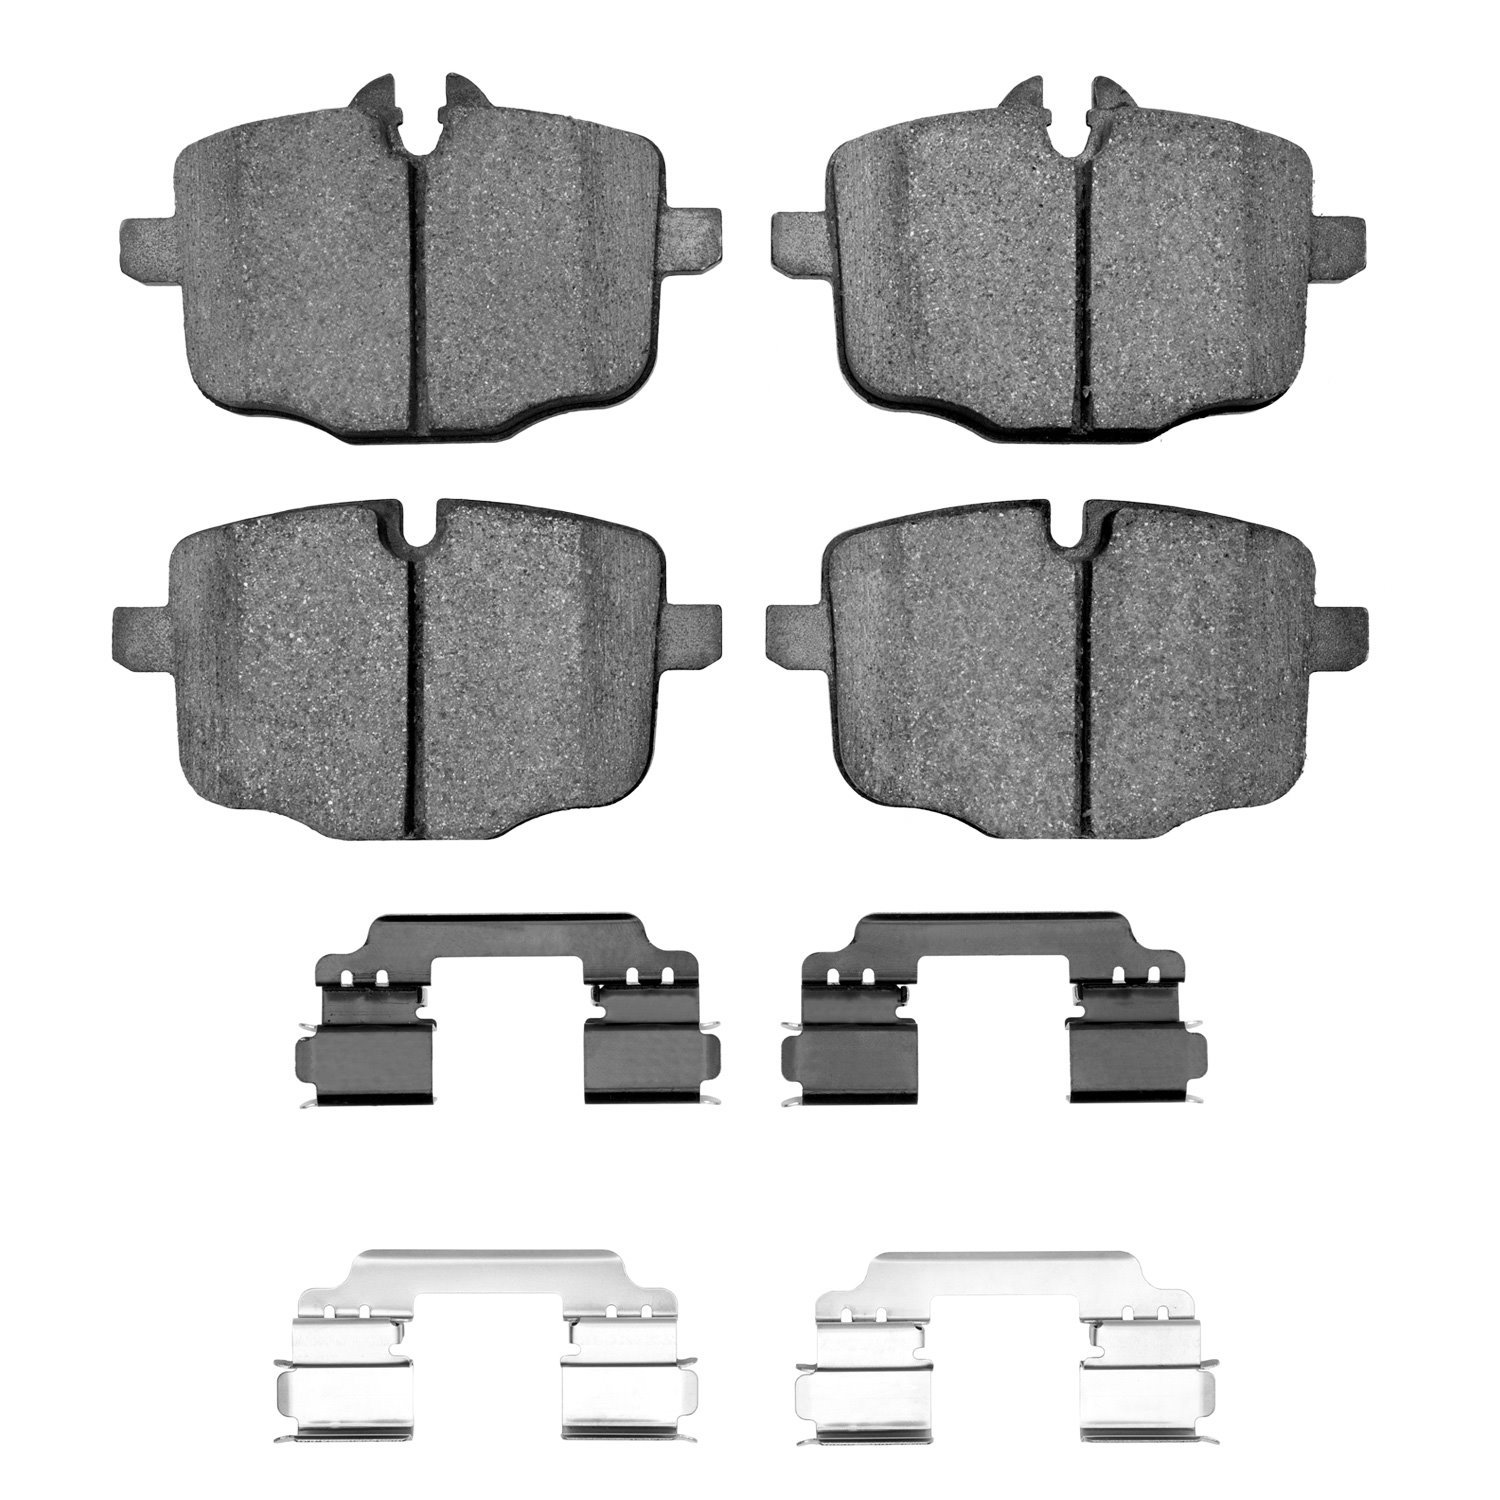 1310-1469-02 3000-Series Ceramic Brake Pads & Hardware Kit, 2012-2019 BMW, Position: Rear